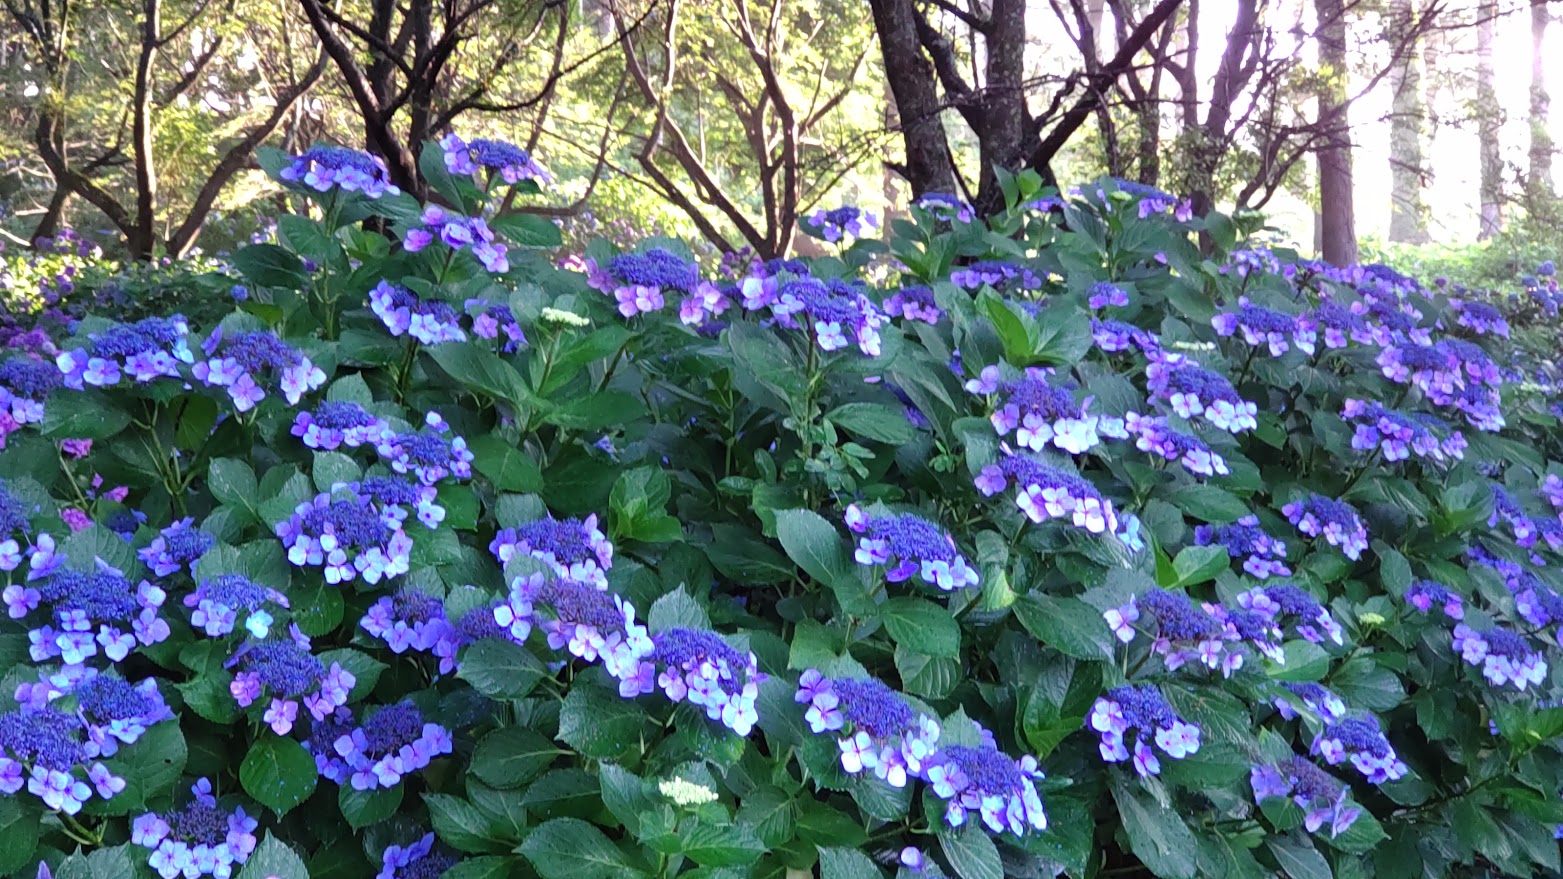 亀ヶ城公園紫陽花